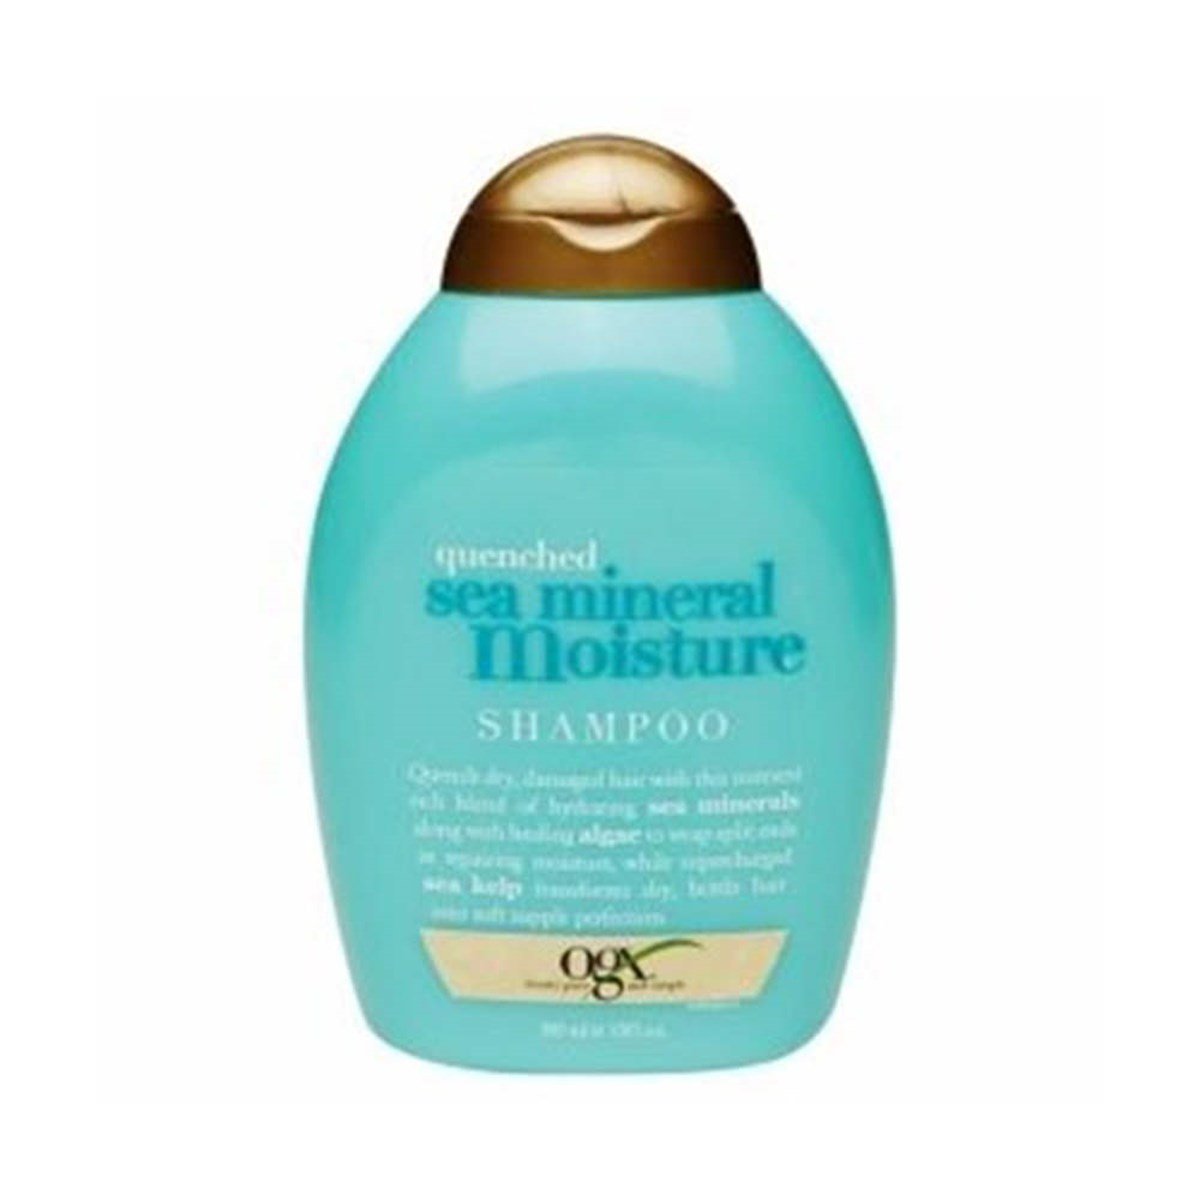 Organix Sea Mineral Moisture Shampoo 385 ml - Deniz Mineralli Şampuan